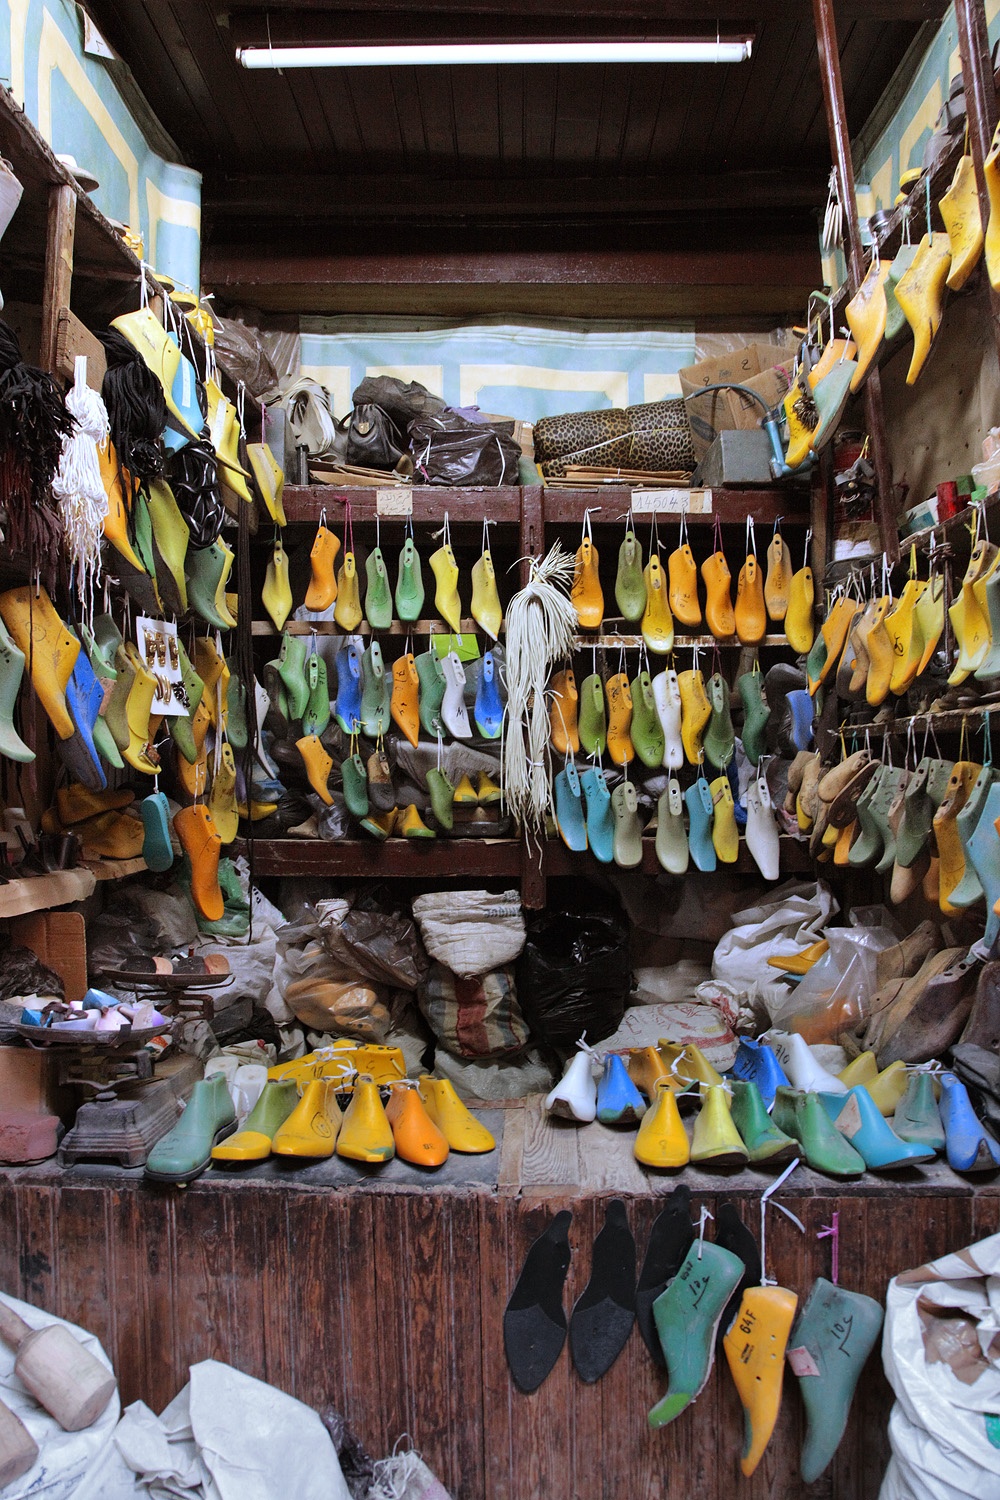 bill-hocker-shoe-forms-fes-el-bali-morocco-2013